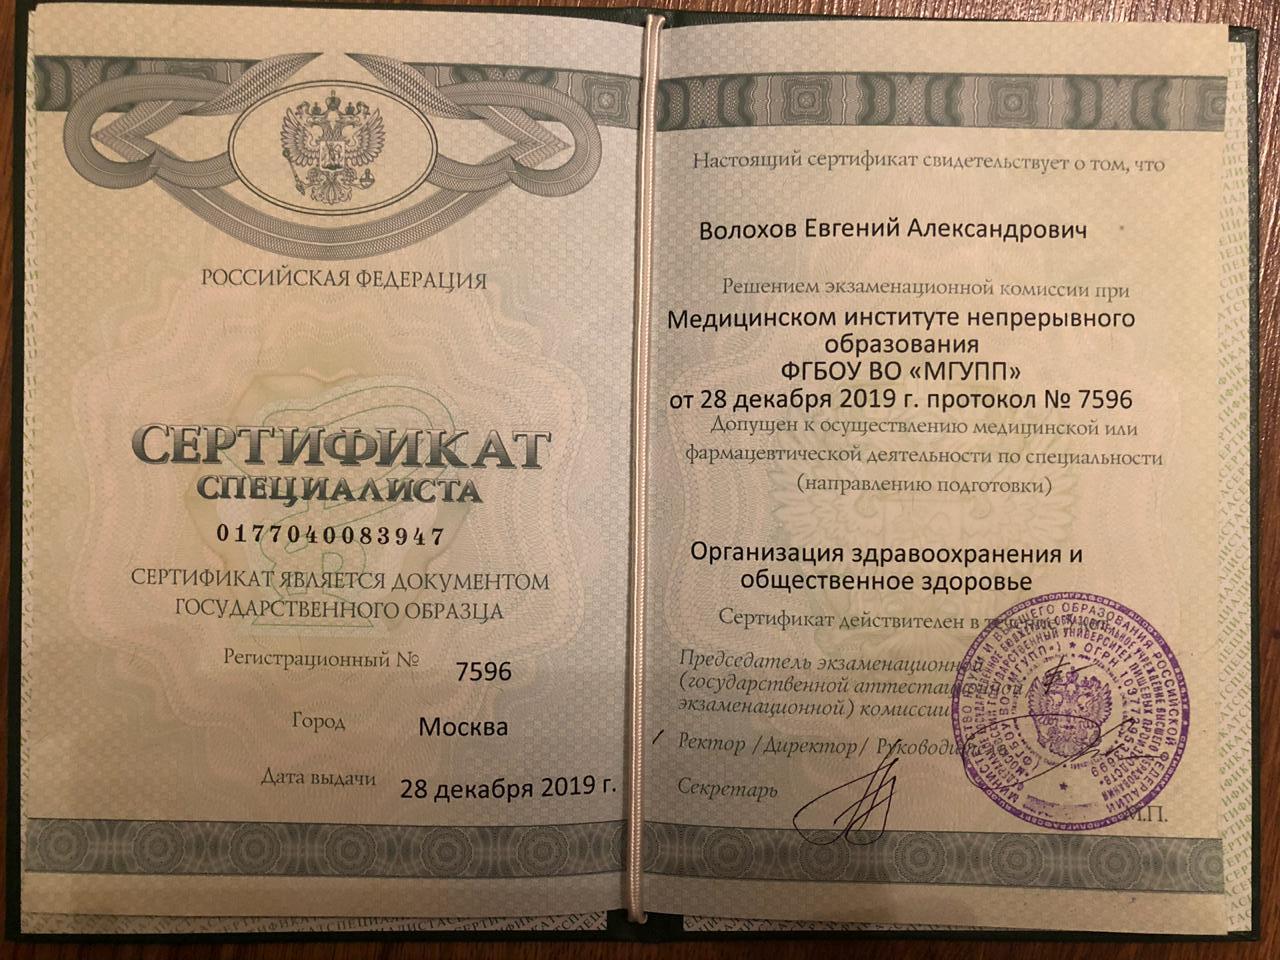 Сертификат специалиста Здоровье Волохов Евгений Александрович